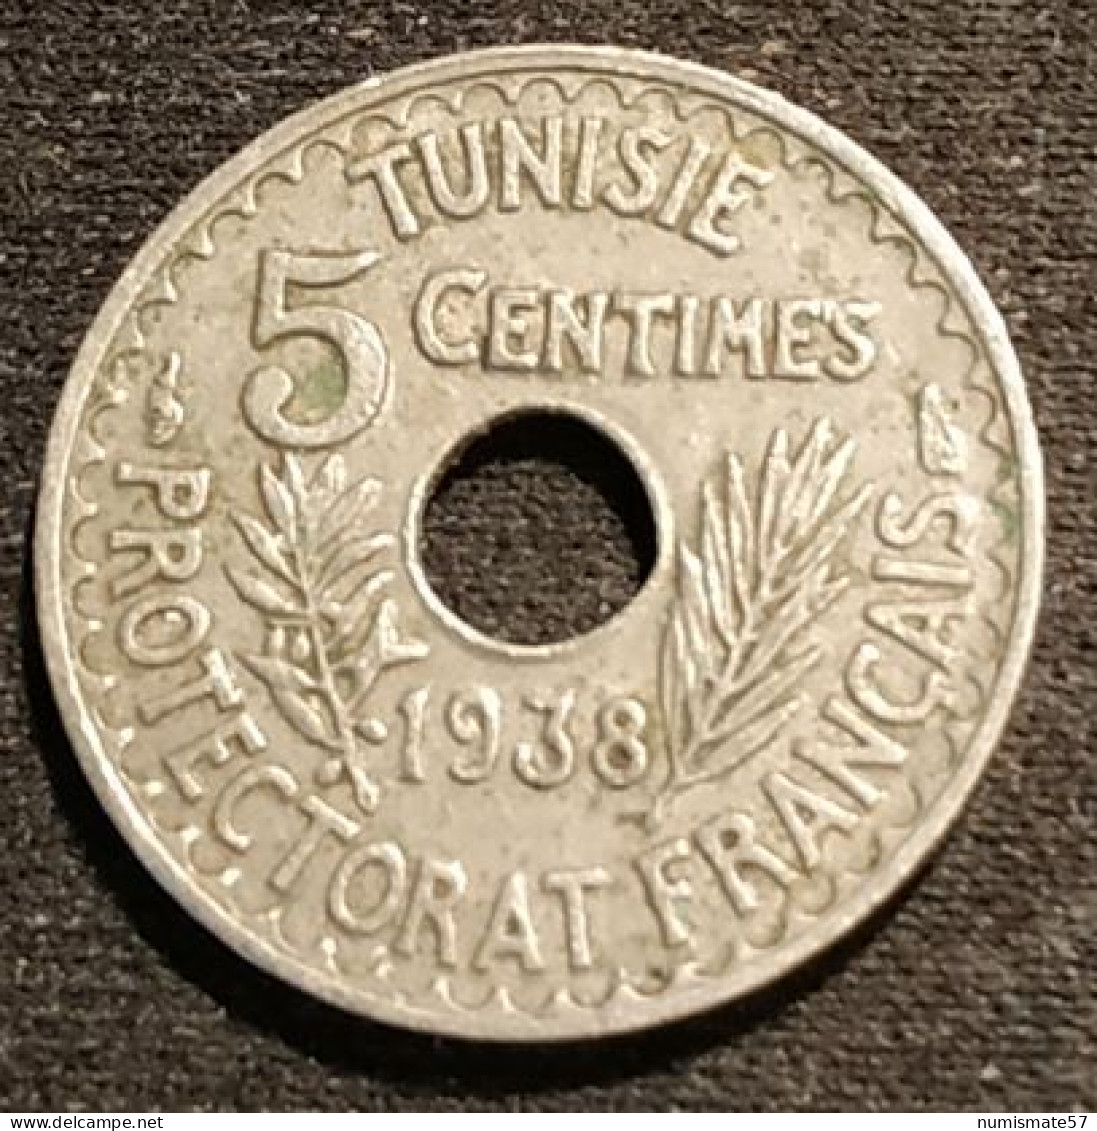 TUNISIE - TUNISIA - 5 CENTIMES 1938 ( 1357 ) - Ahmad Pasha - Protectorat Français - KM 258 - Tunisie